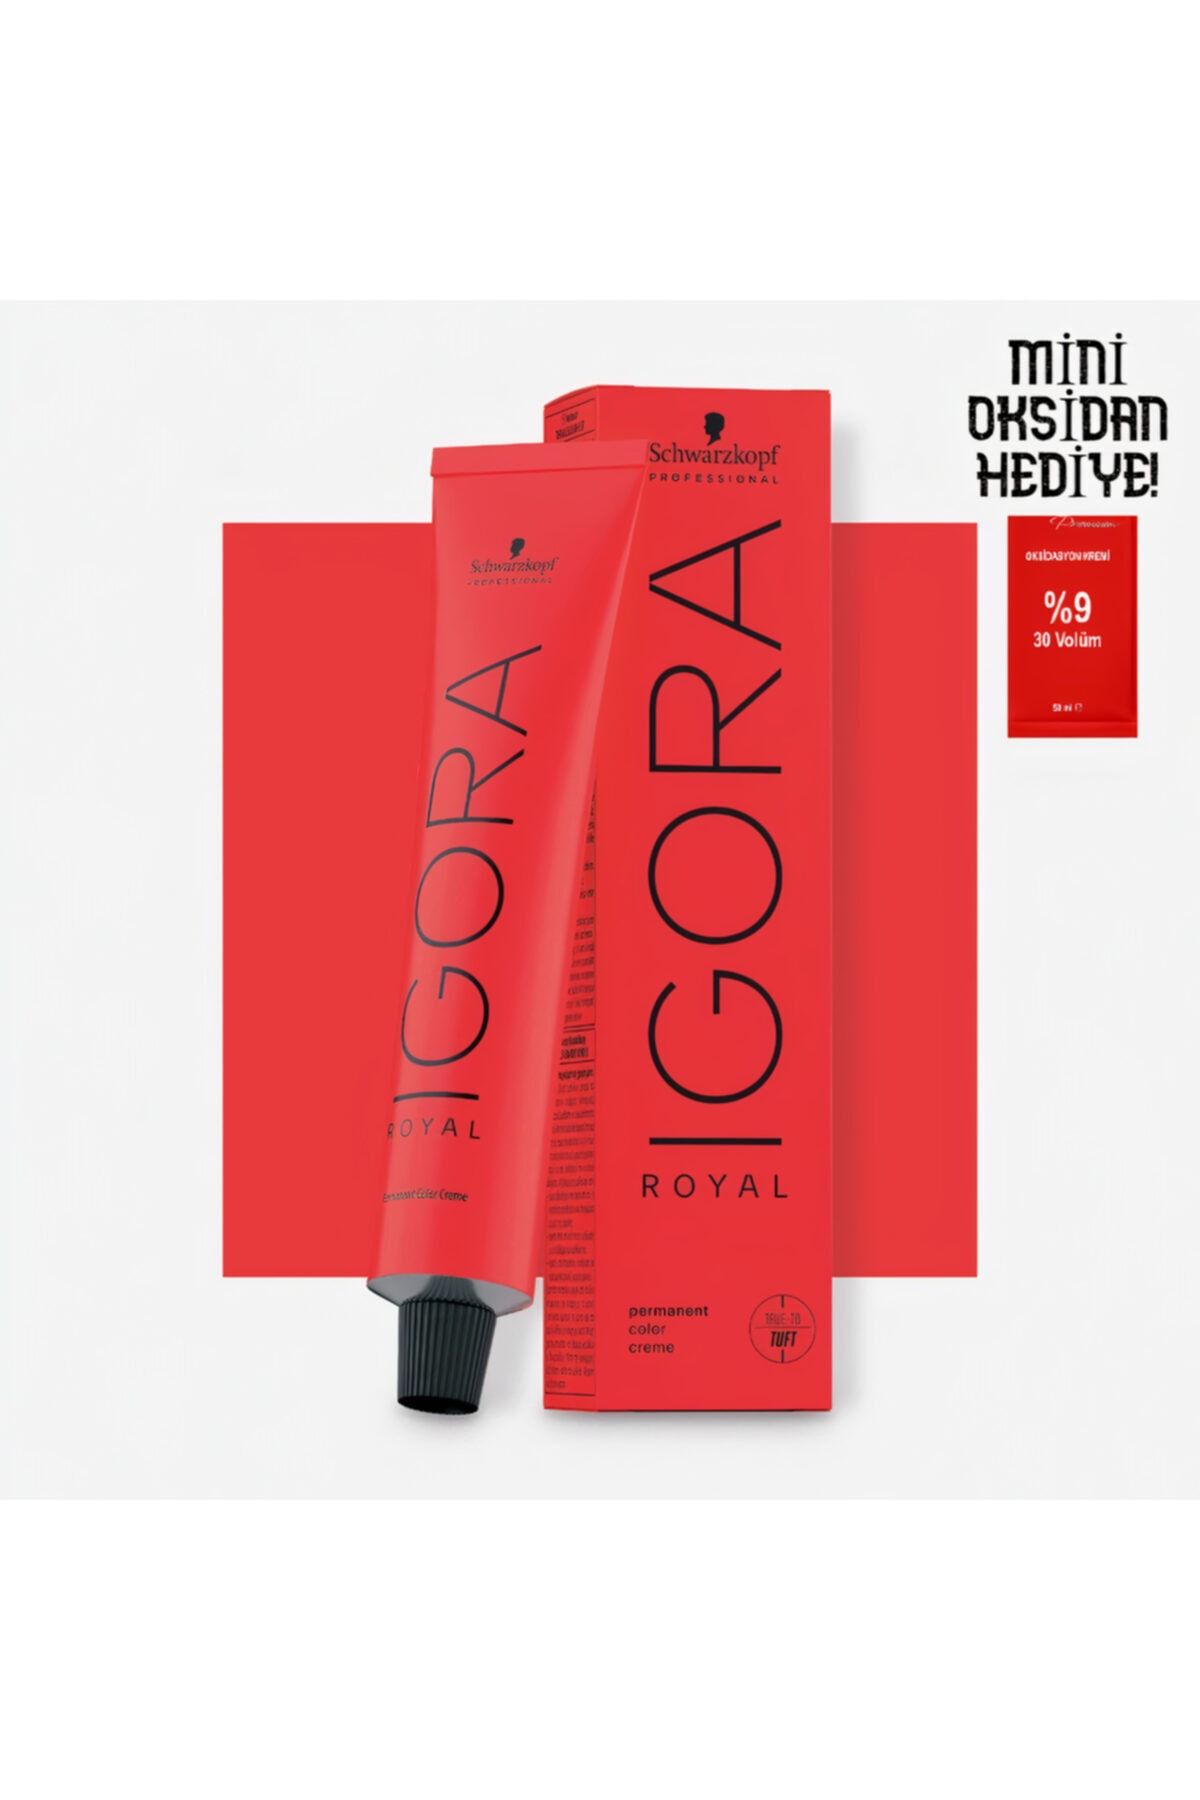 Igora Royal Saç Boyası 6.5 Altın Koyu Kumral 60 Ml + Mini Oksidan 20 Vol.